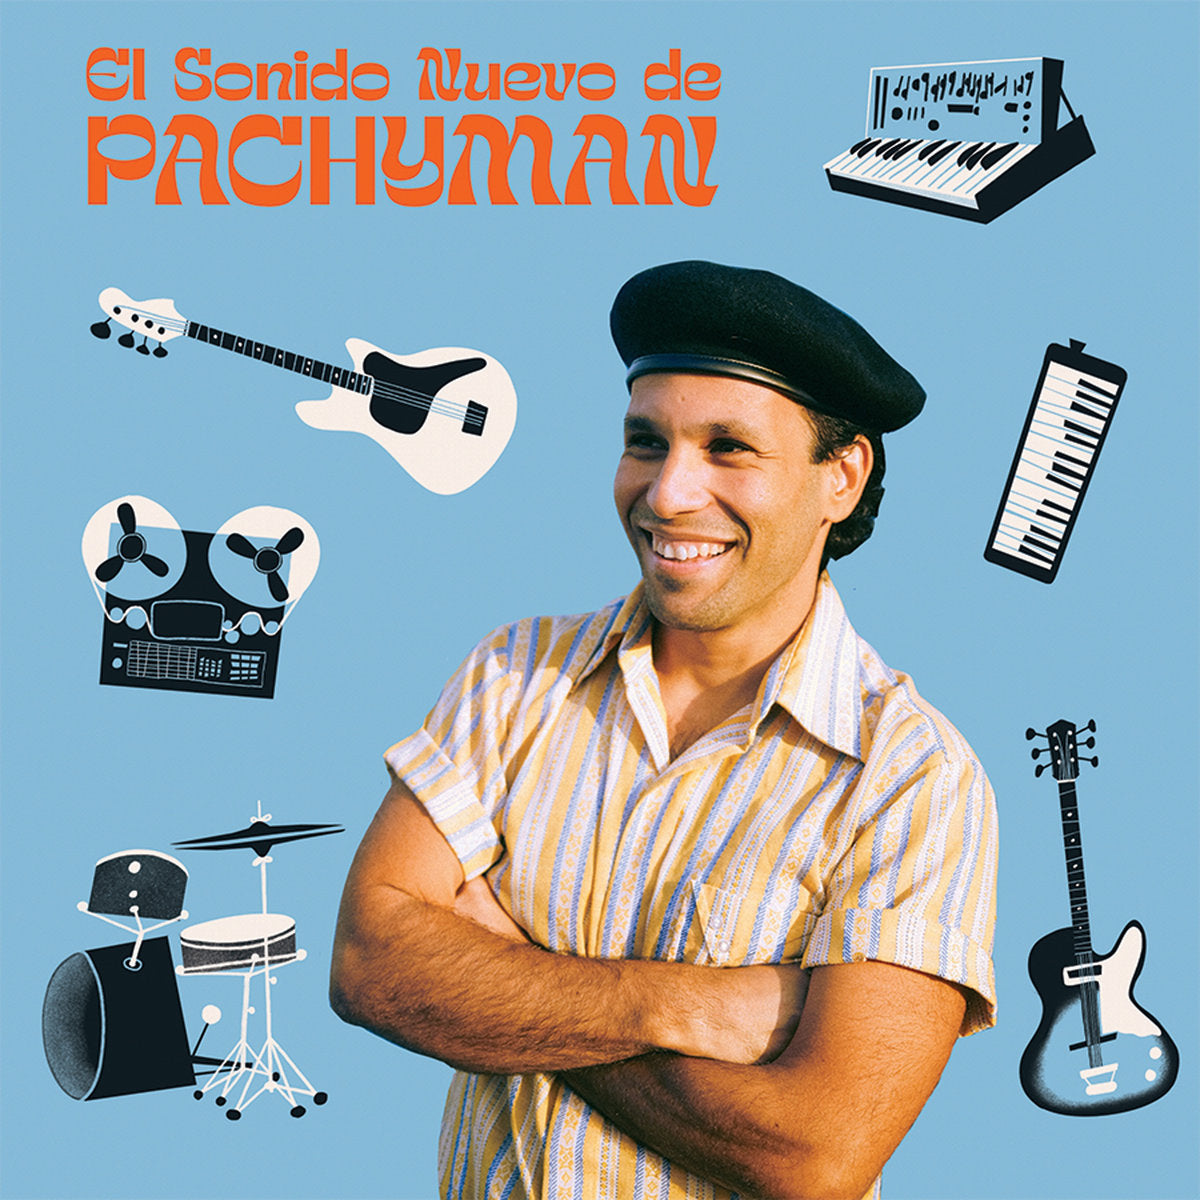 PACHYMAN - EL SONIDO NUEVO DE PACHYMAN Vinyl 7” Single